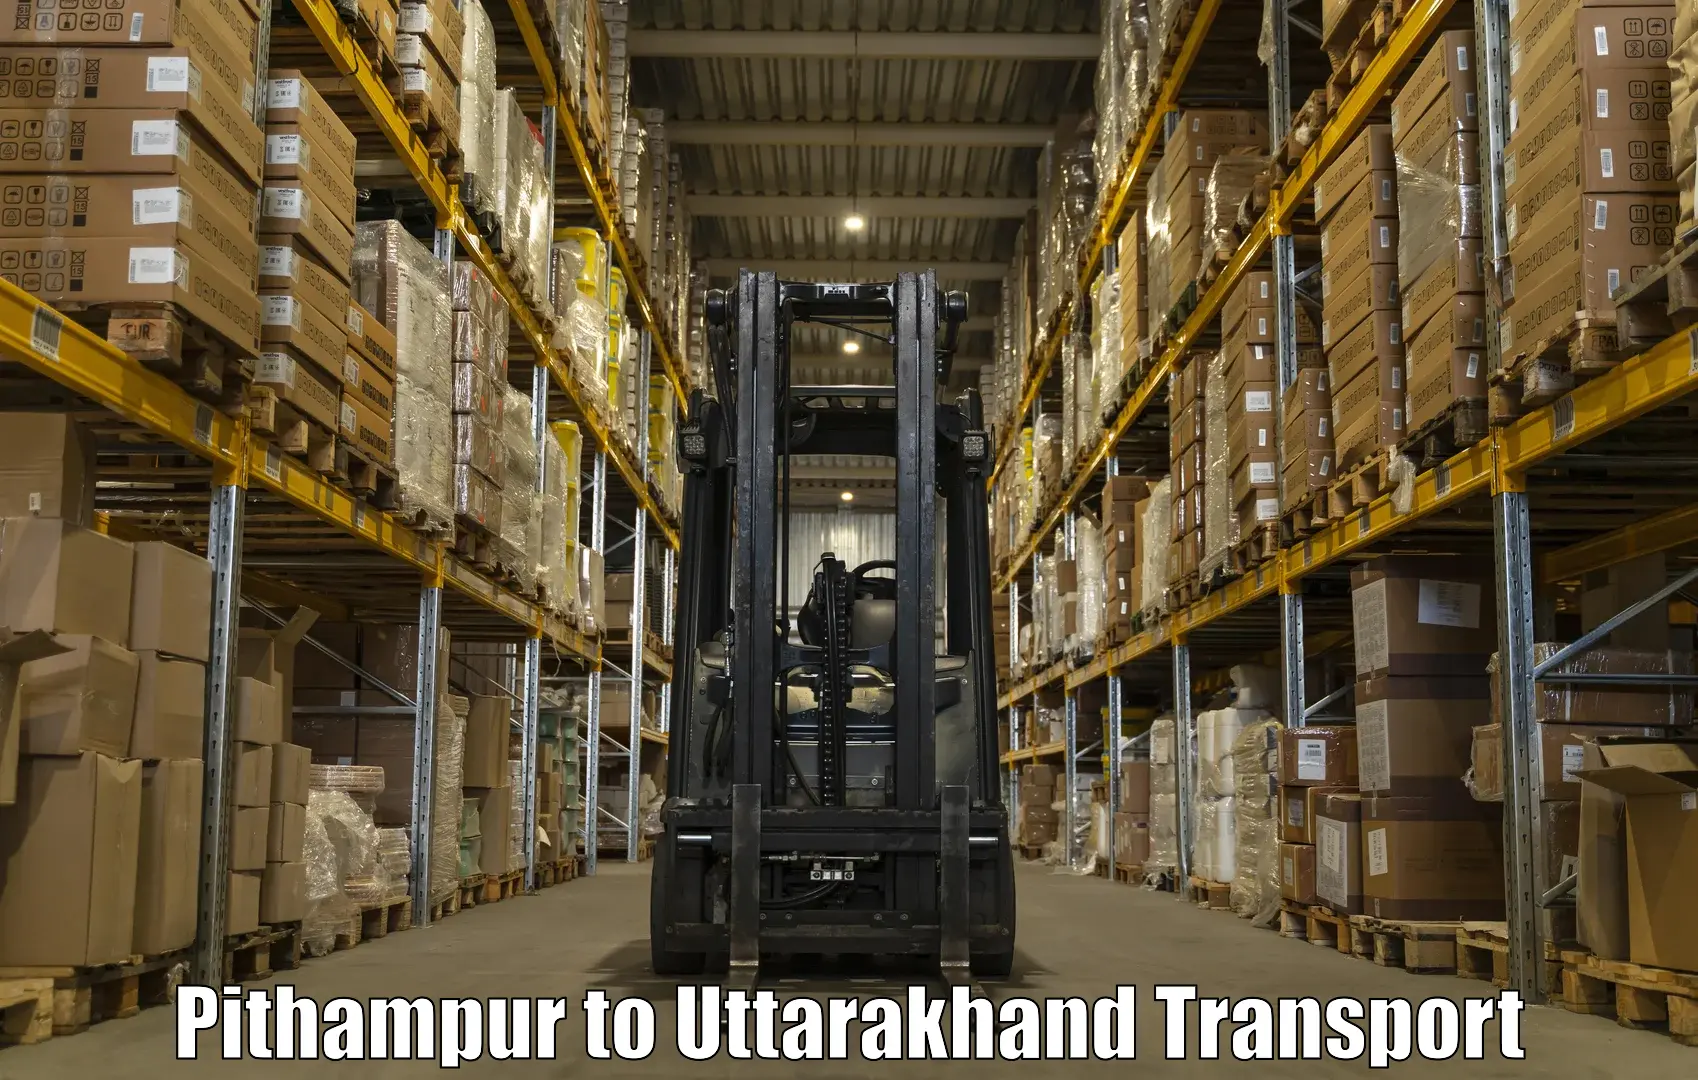 Online transport service Pithampur to Kotdwara